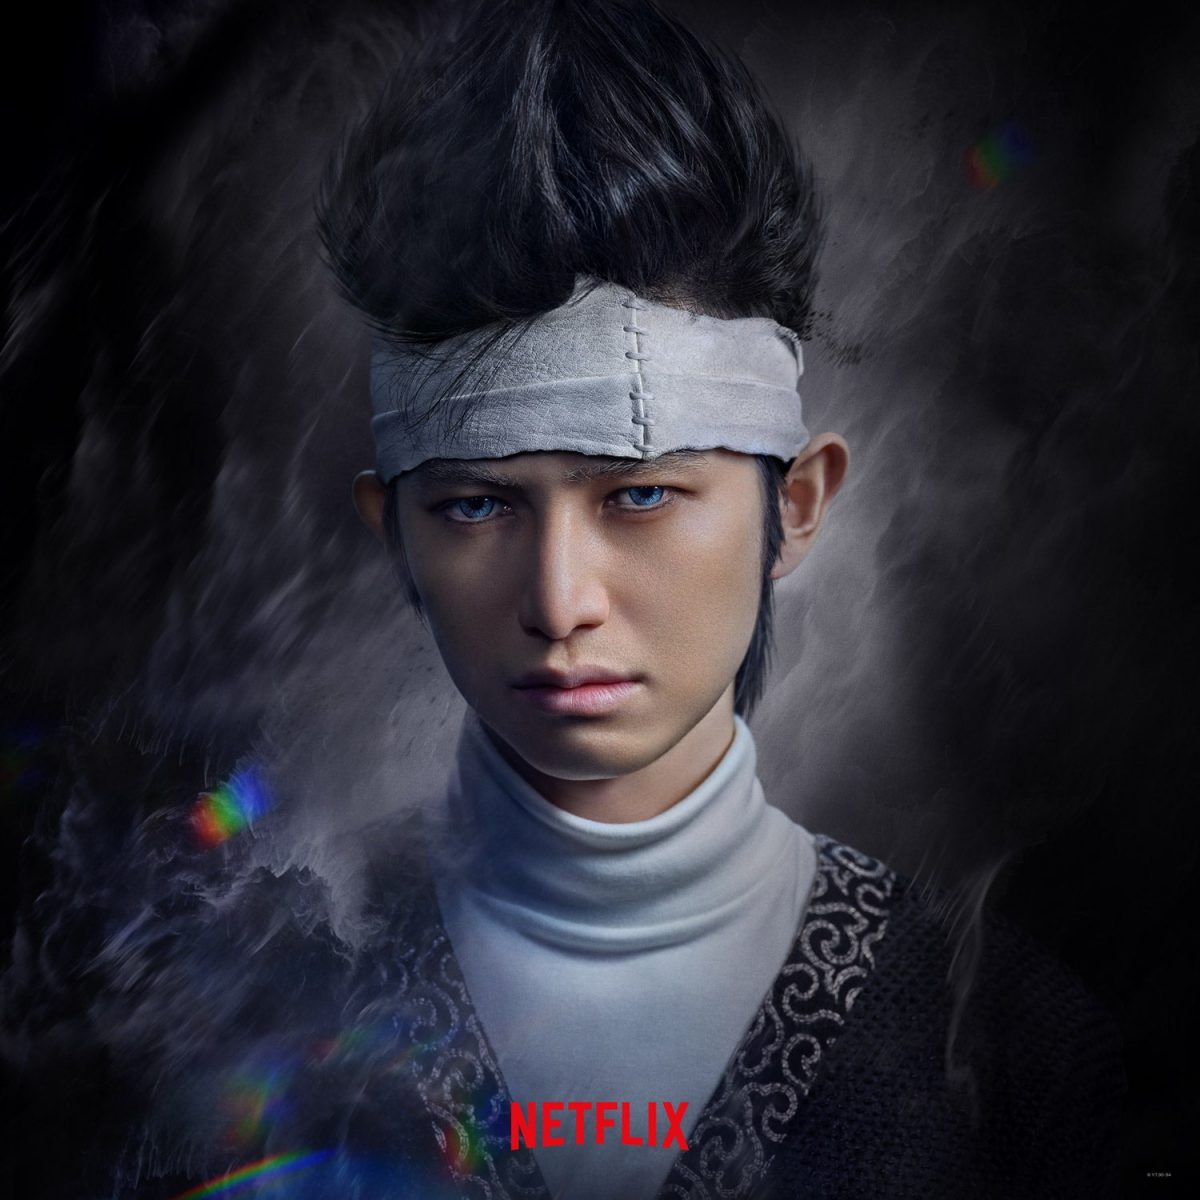 Yu Yu Hakusho: primeiro trailer é lançado pela Netflix com muita